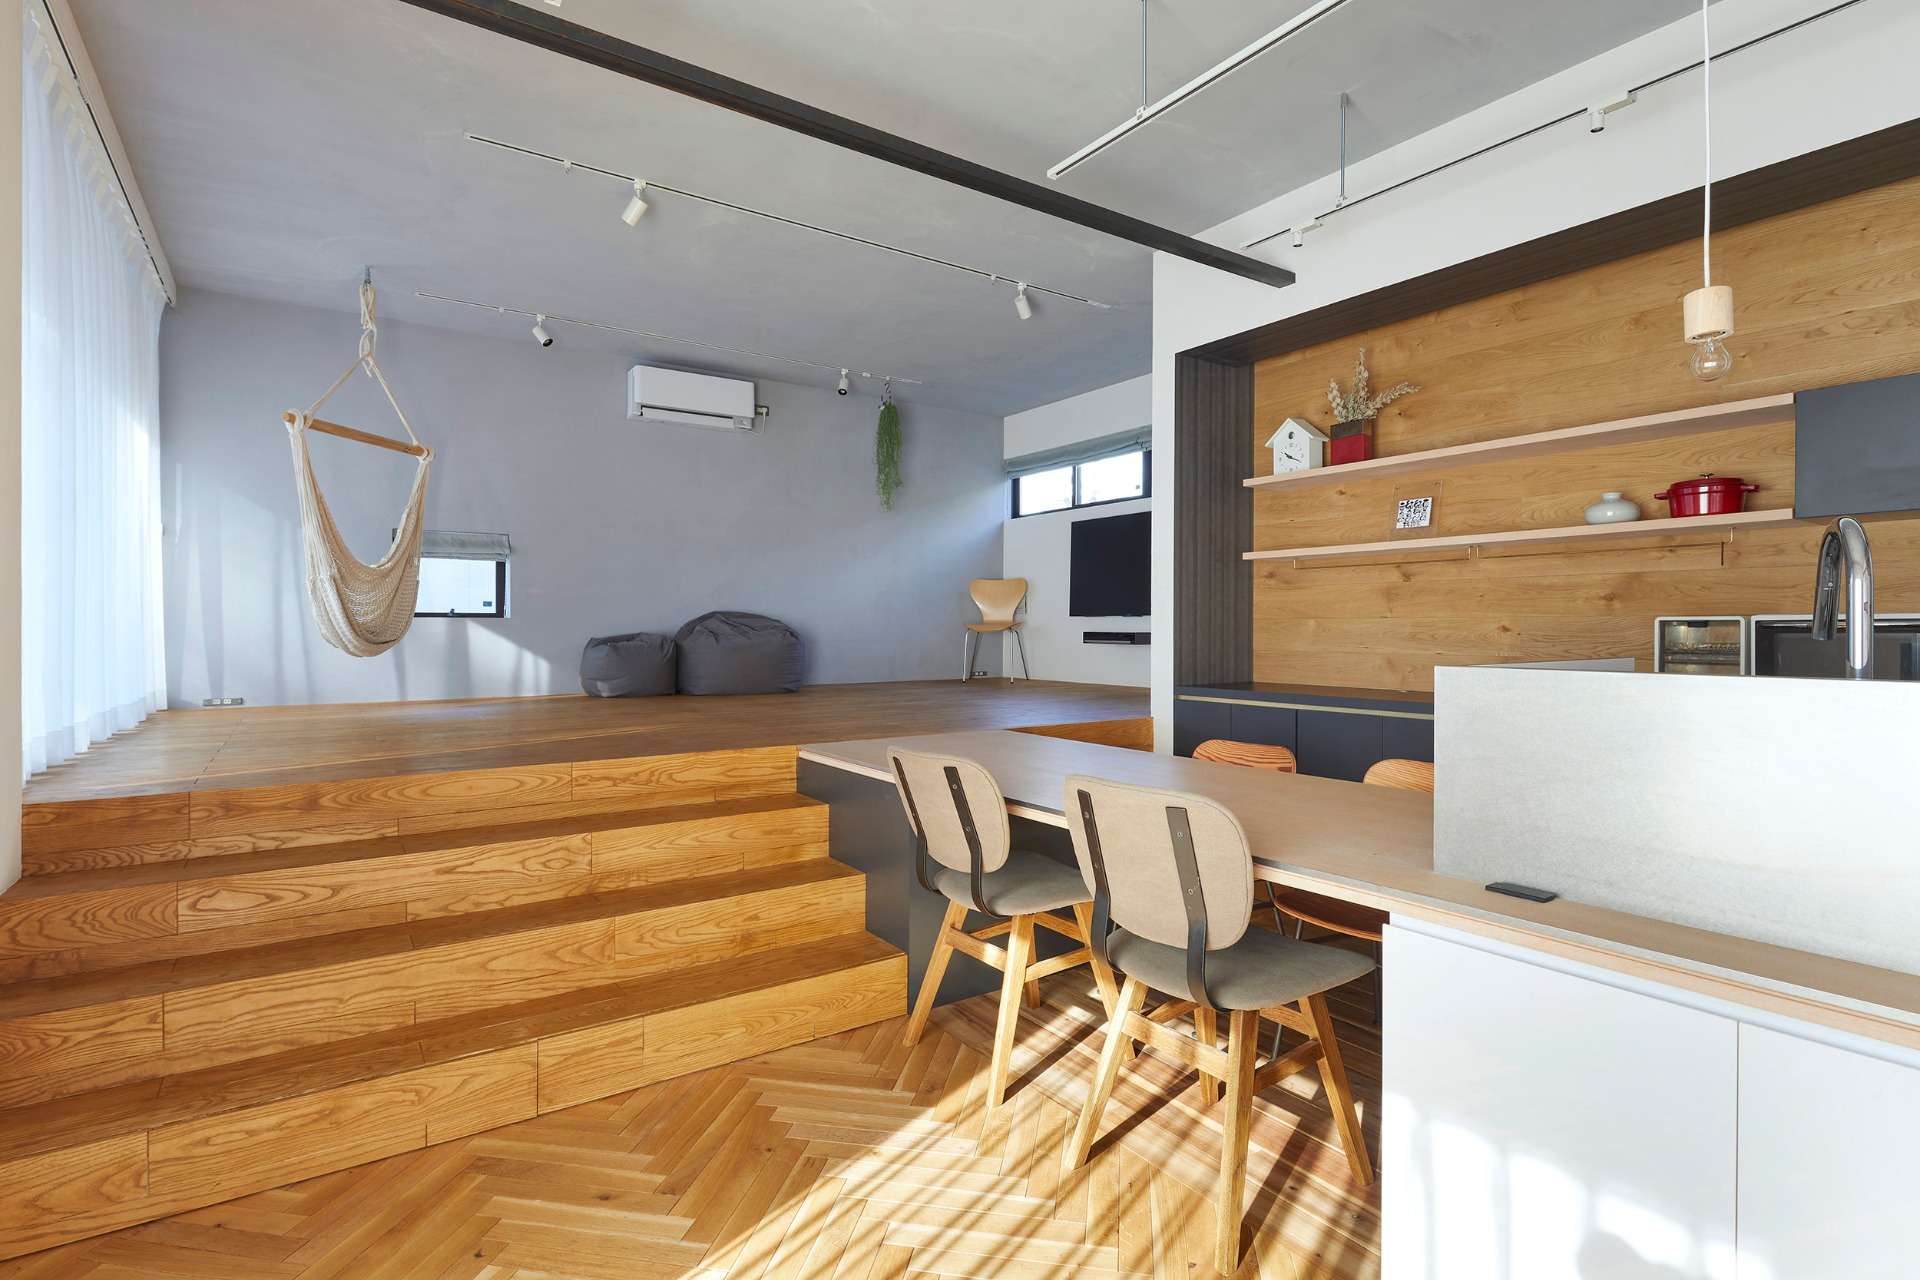 廿日市市で暮らし豊かな注文住宅は設計事務所asazu design office